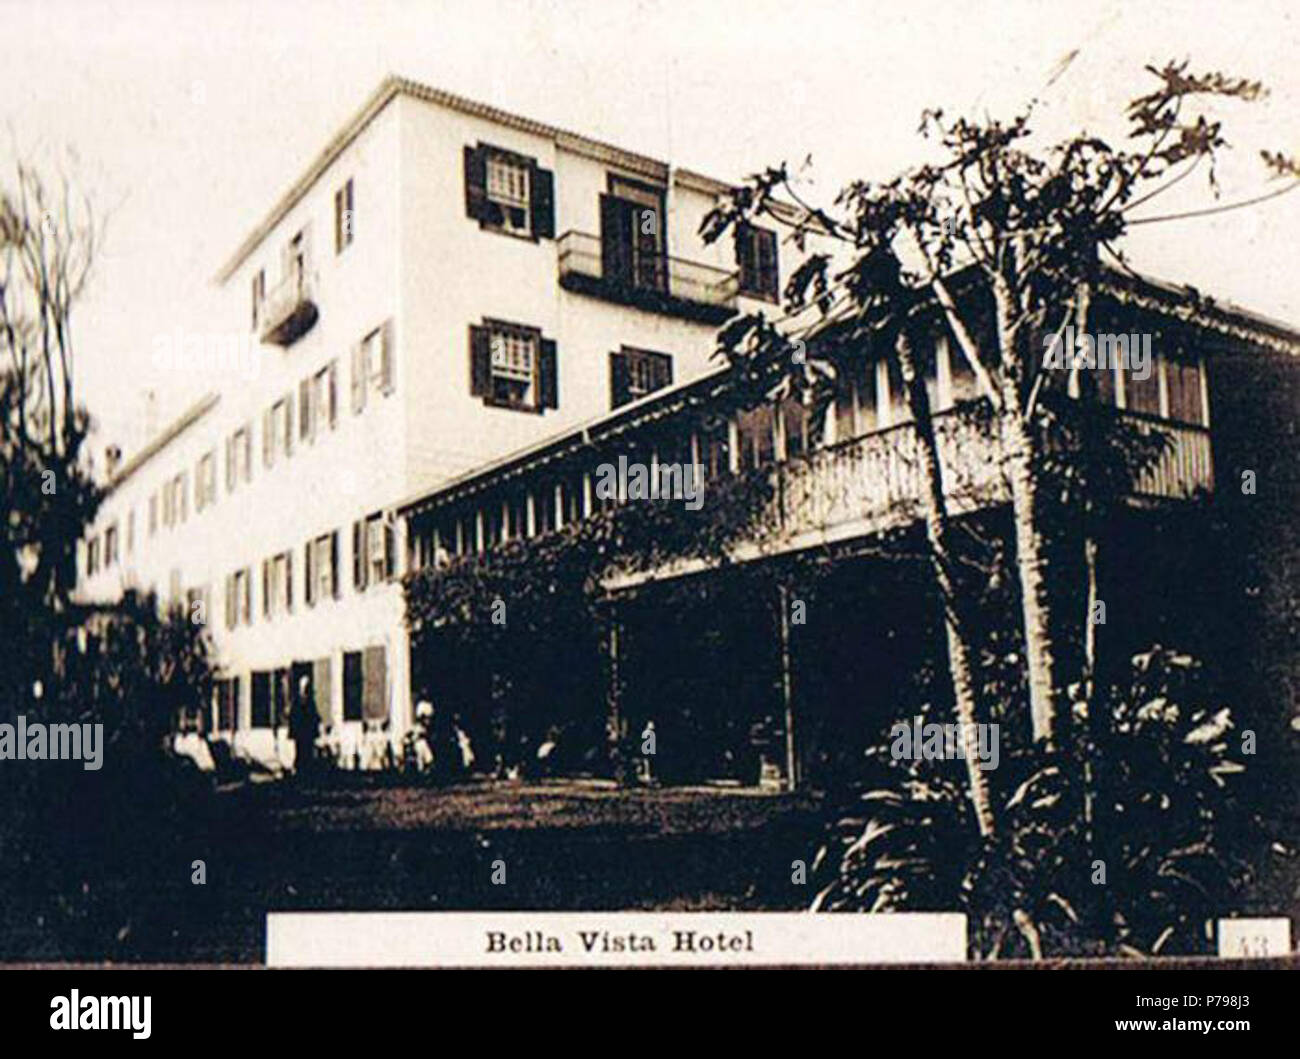 Português: Bella Vista Hotel. Antigo Hotel da Bela Vista, 1870 (c.). Seminário Diocesano, Funchal. Bilhete - Post de 1920 (c.). Ilha da Madeira. ca. 1920 11 Bella Vista Hotel Stockfoto